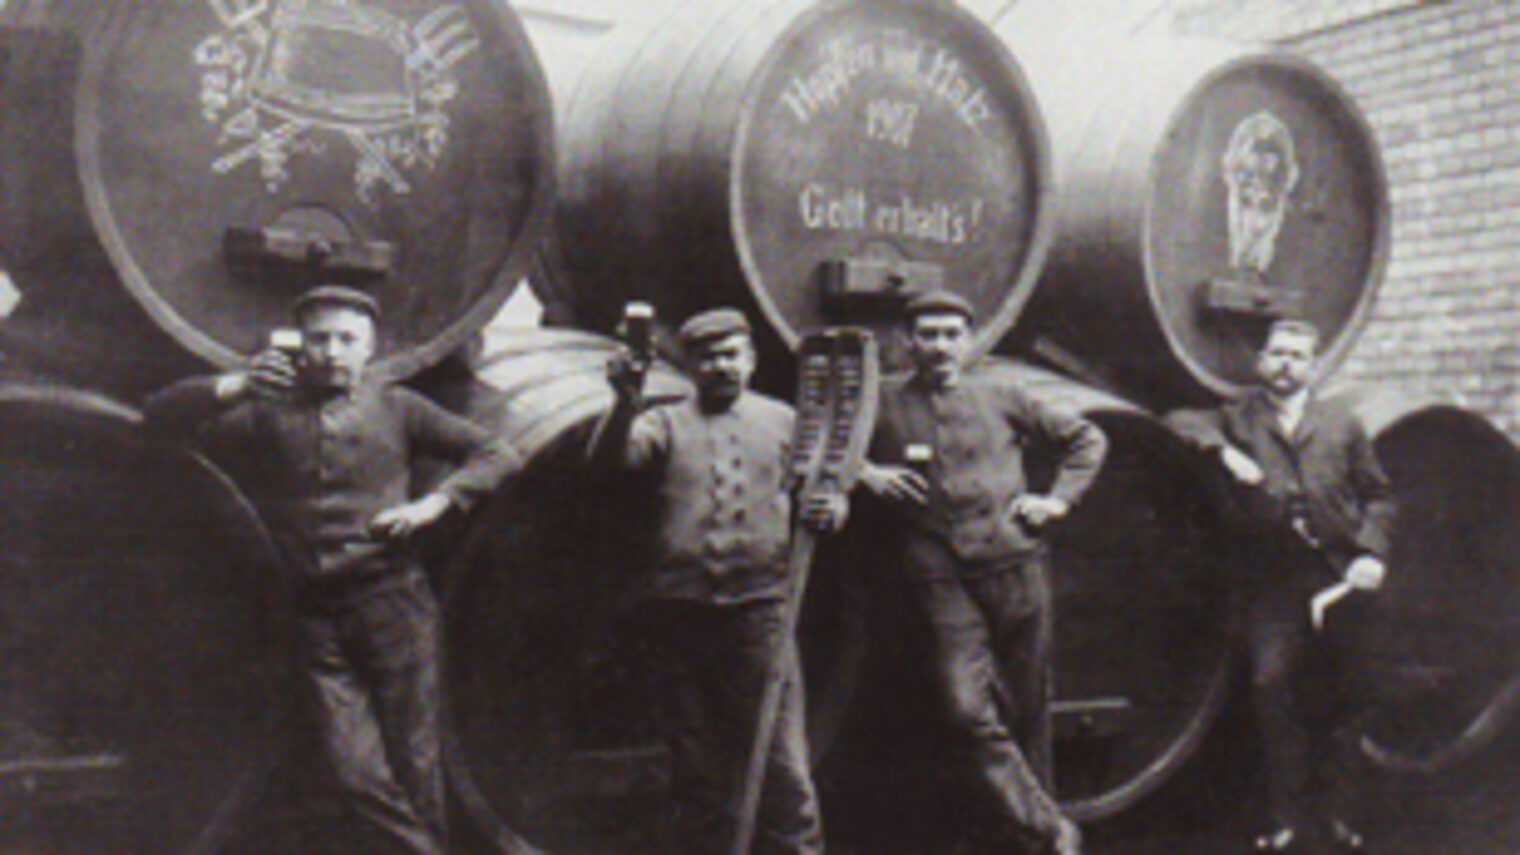 Historisches Foto von Brauern, die vor Bierfässern stehen.